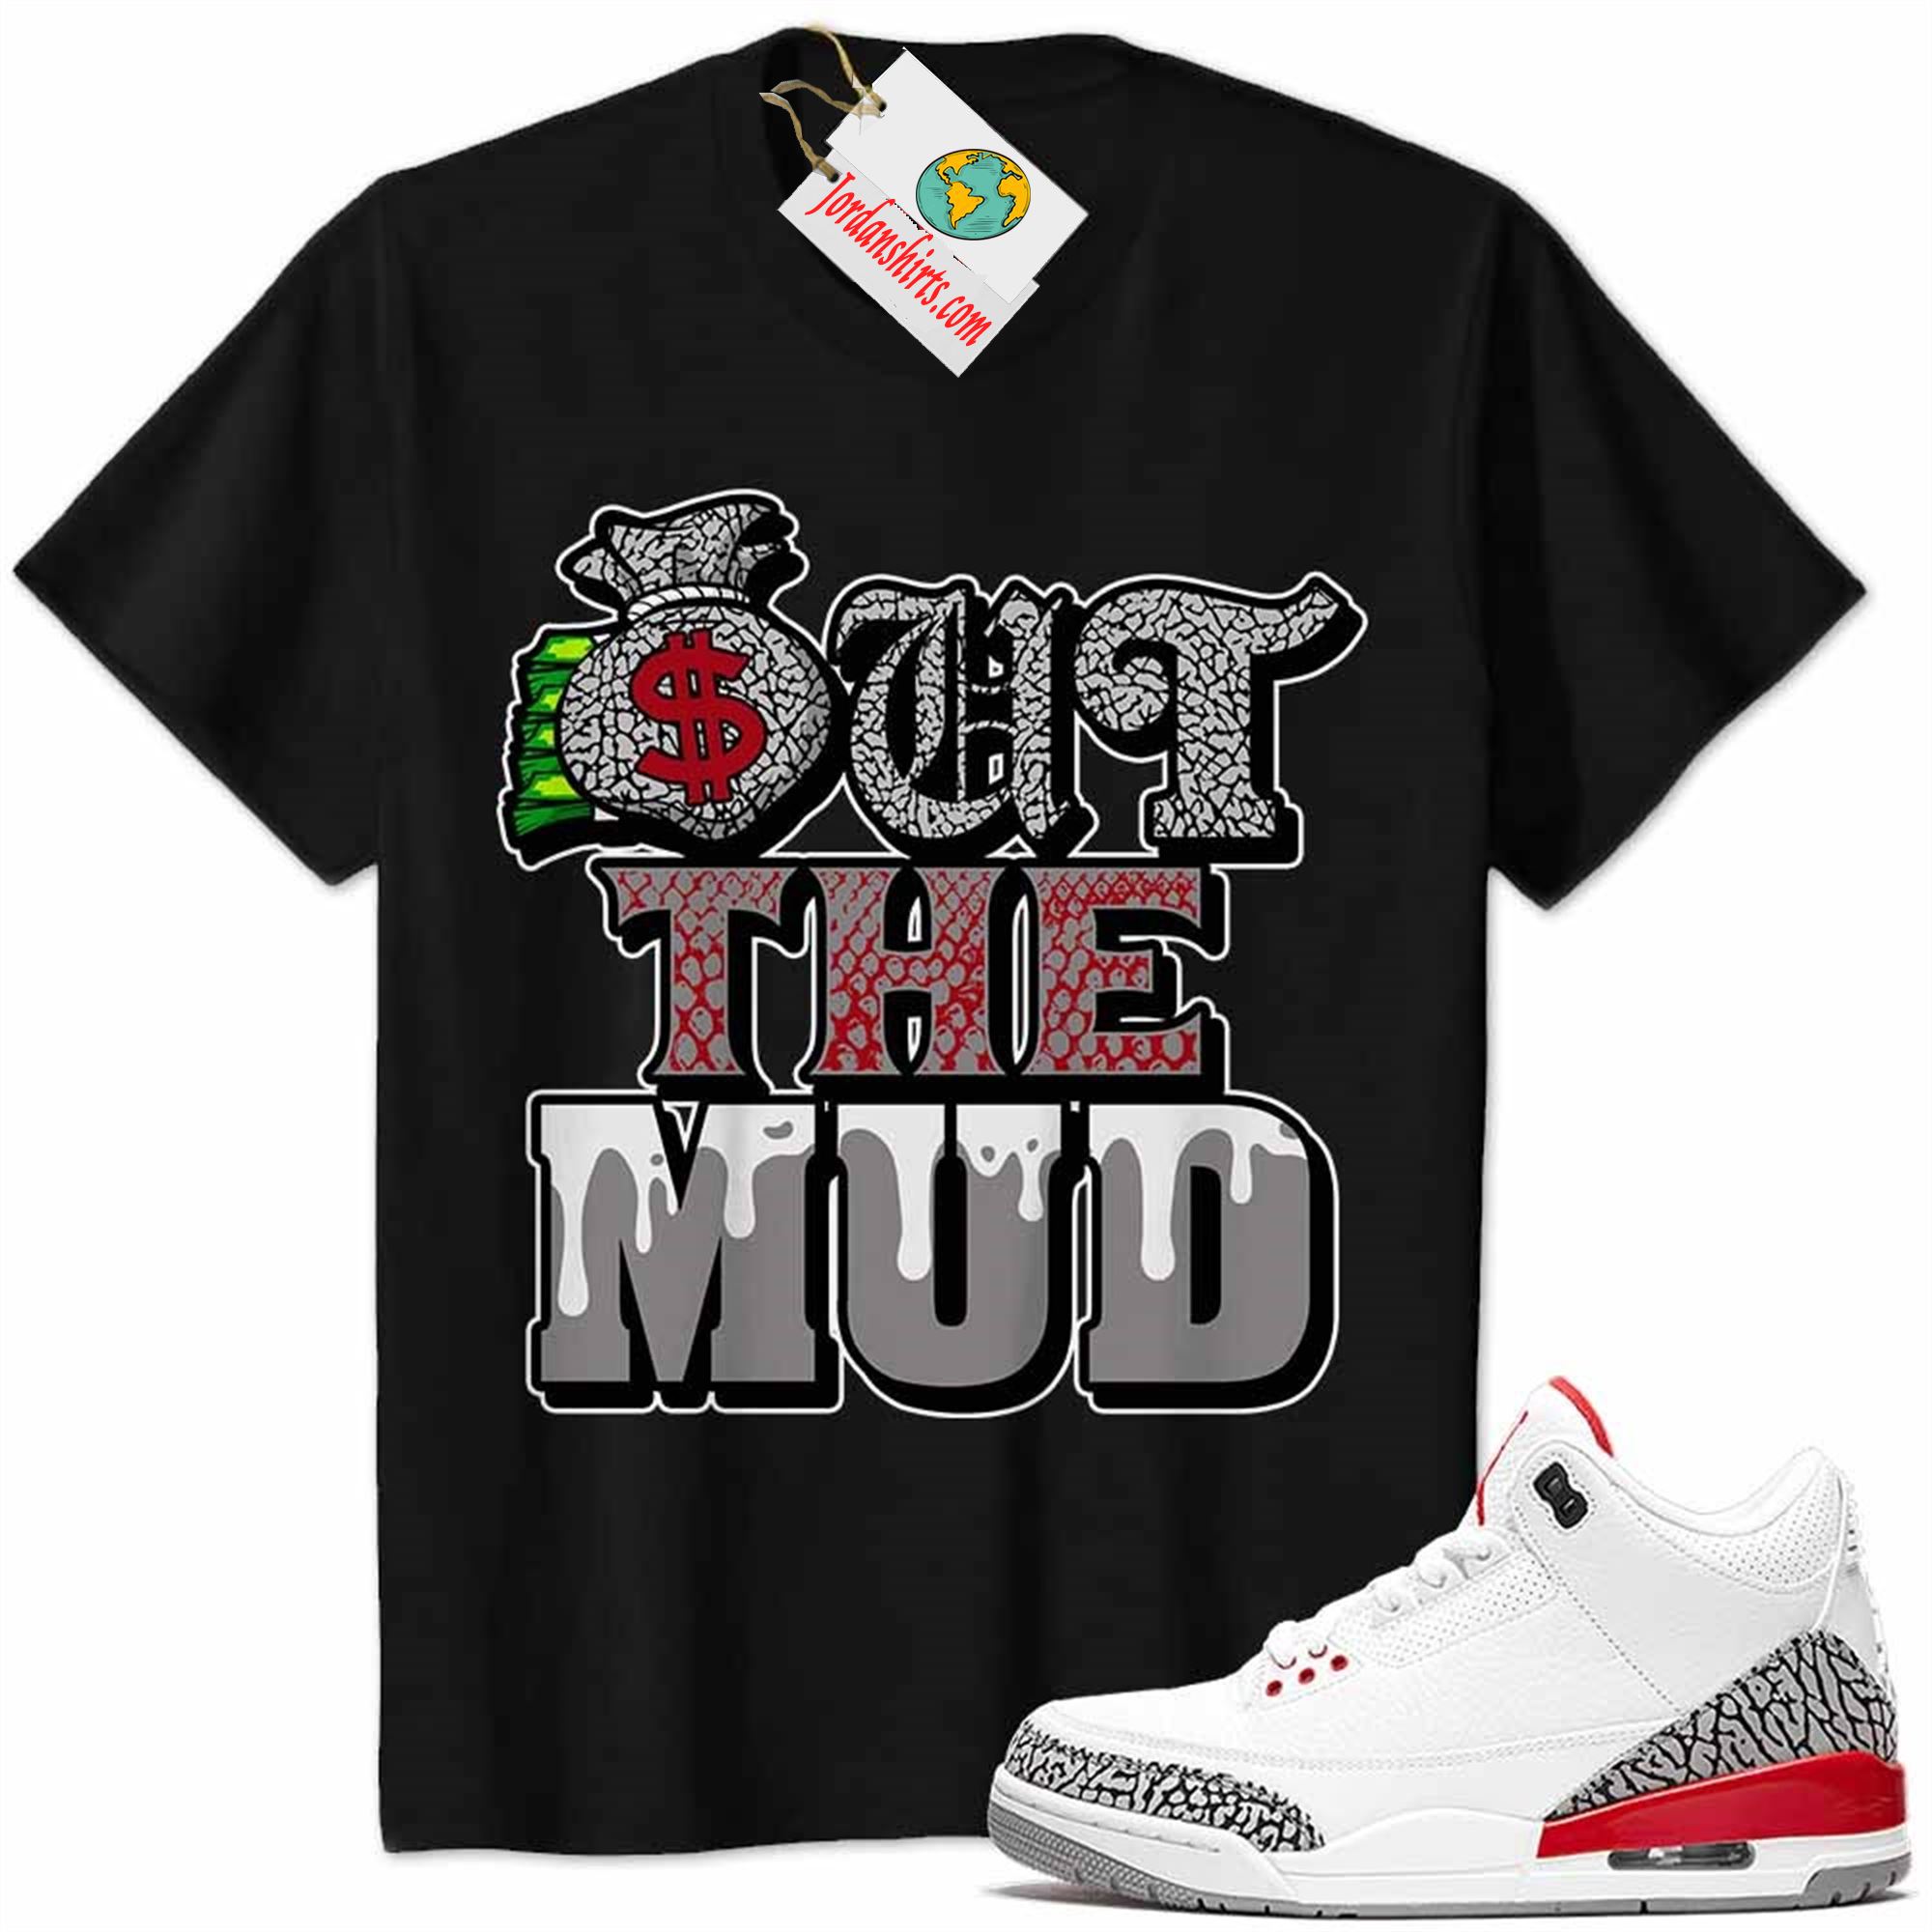 Jordan 3 Shirt, Jordan 3 Katrina Shirt Out The Mud Money Bag Black Plus Size Up To 5xl